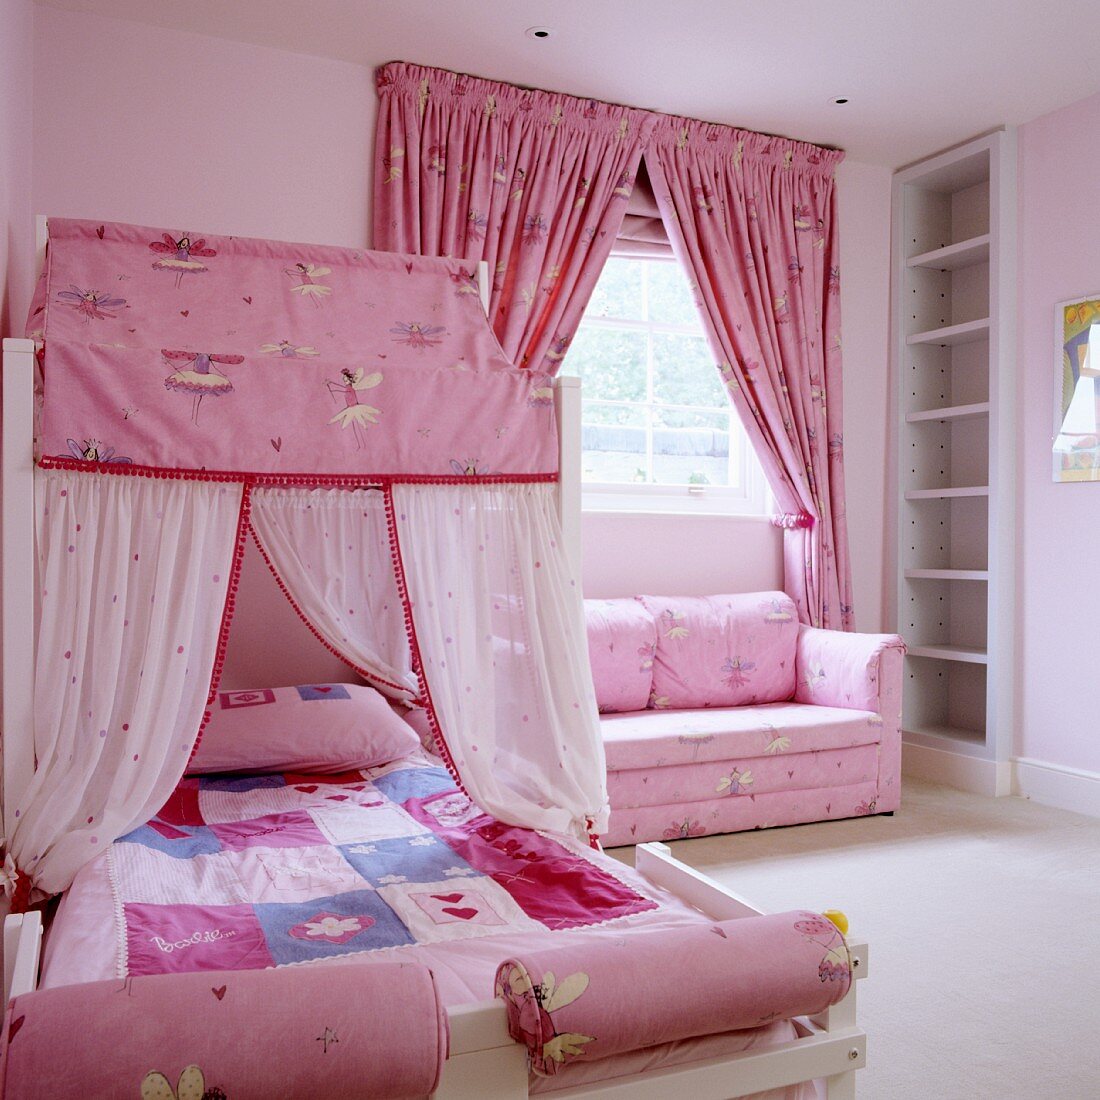 Rosa Mädchenzimmer mit romantischem Flair